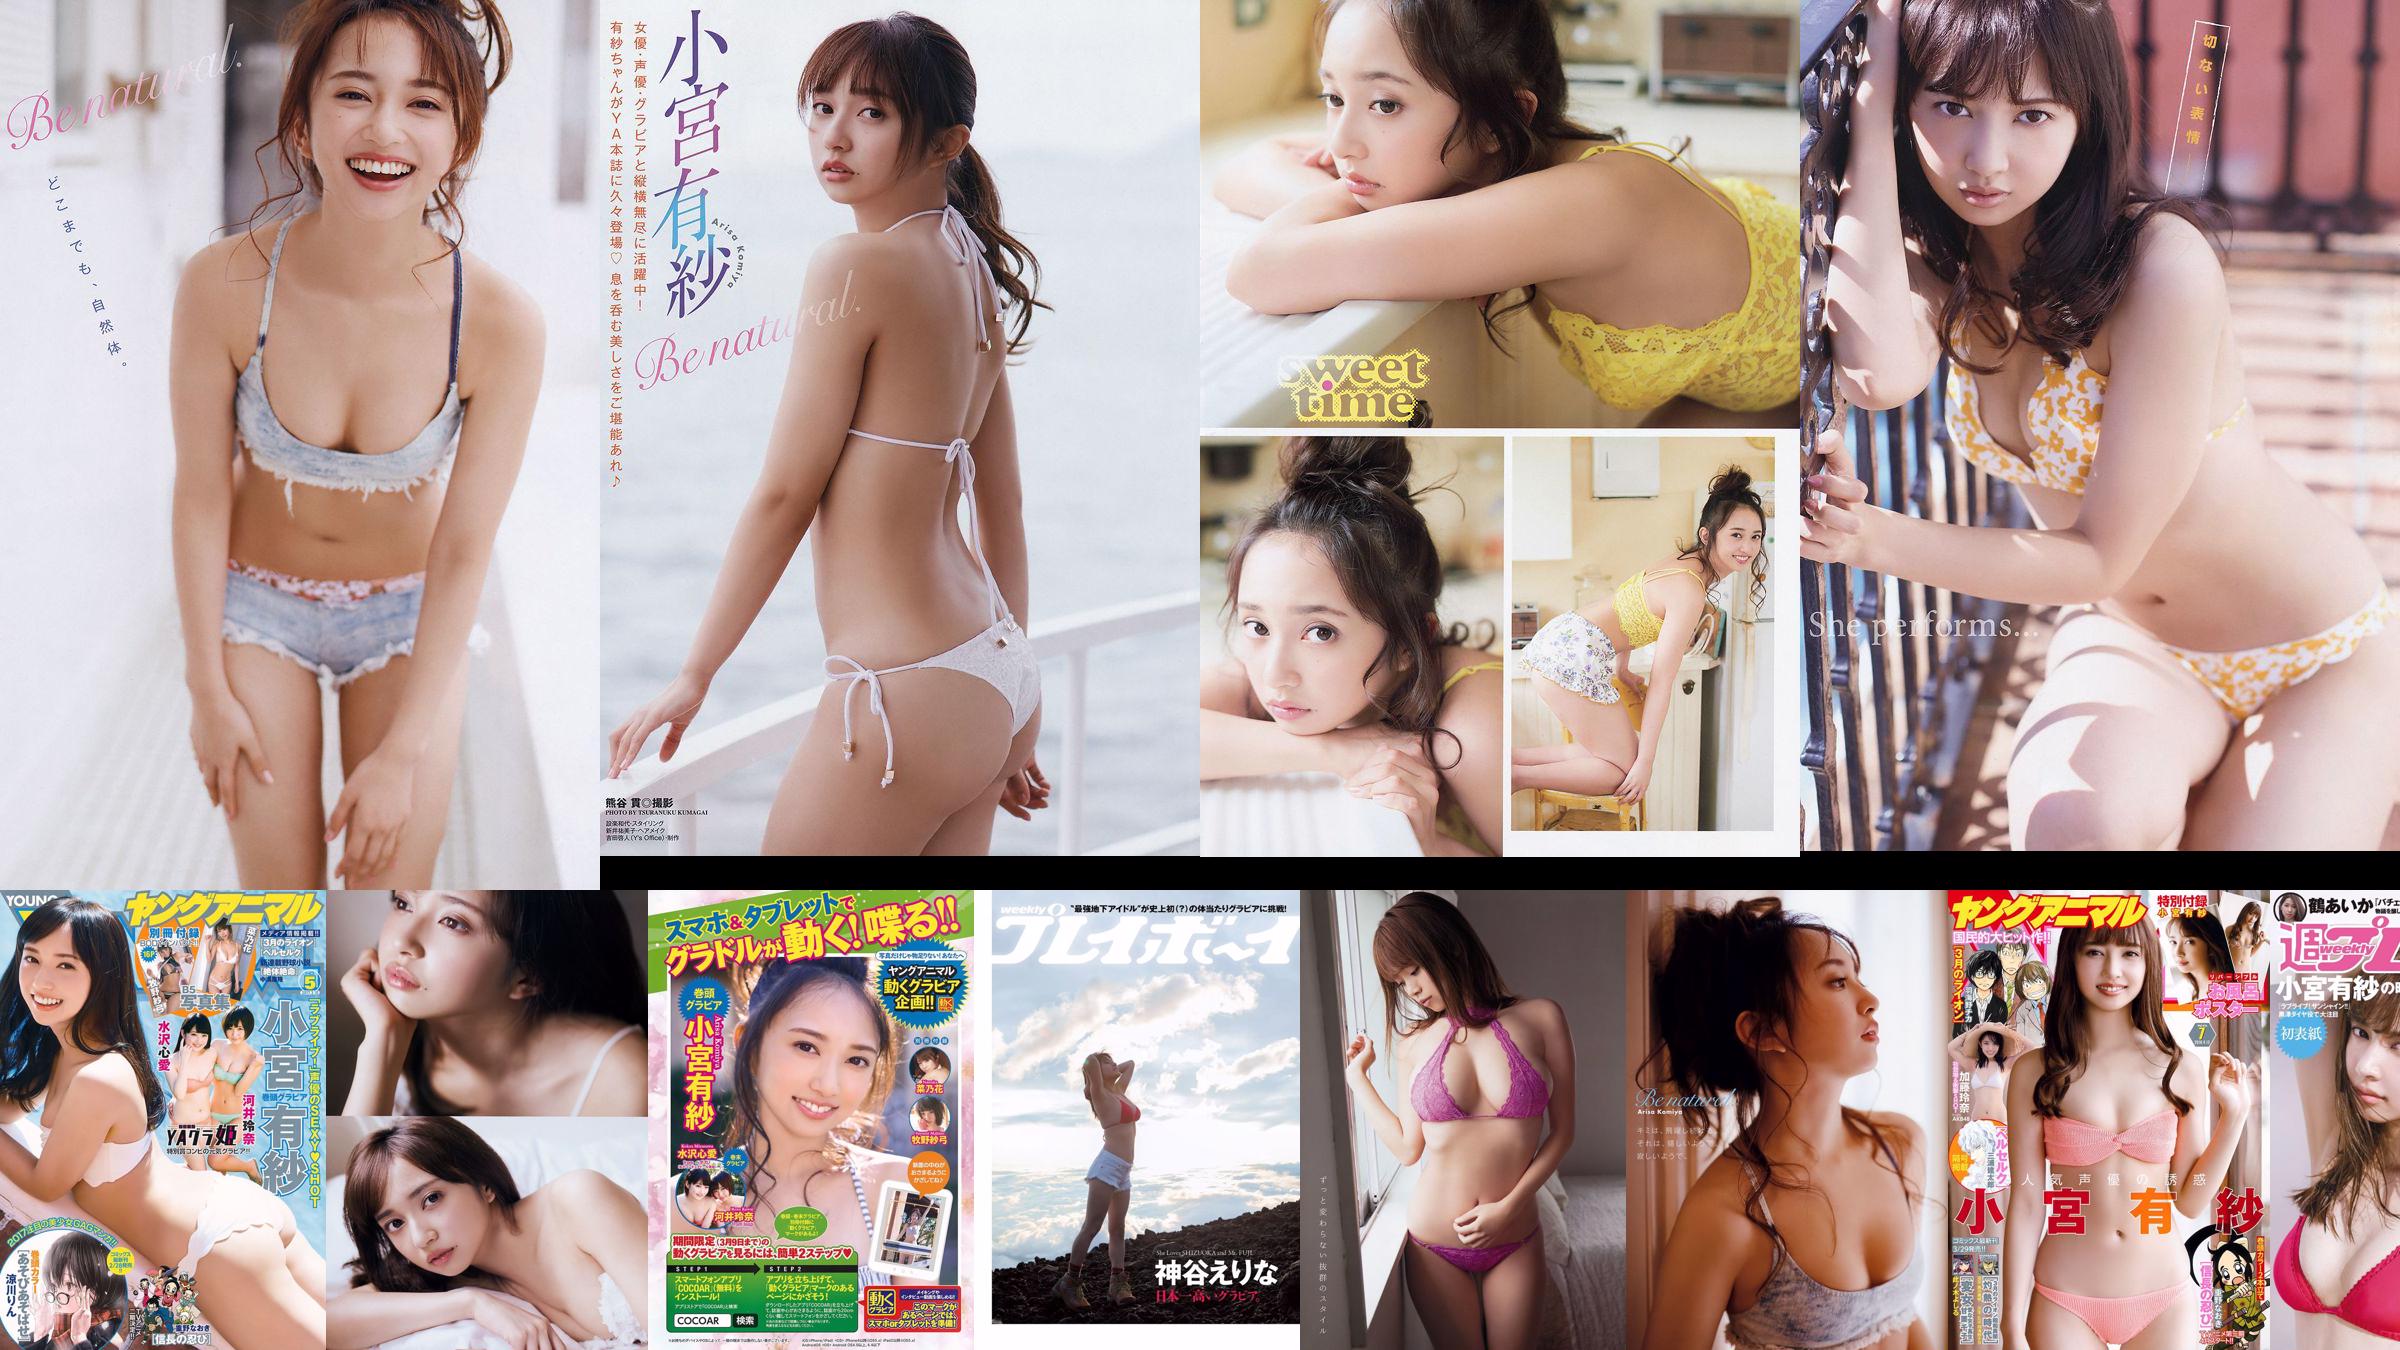 Arisa Komiya Aya Asahina Yuuna Suzuki Miwako Kakei STU48 Honoka Mai Hakase Riho Yoshioka [Weekly Playboy] 2018 No.07 Ảnh Miwako No.35c134 Trang 1